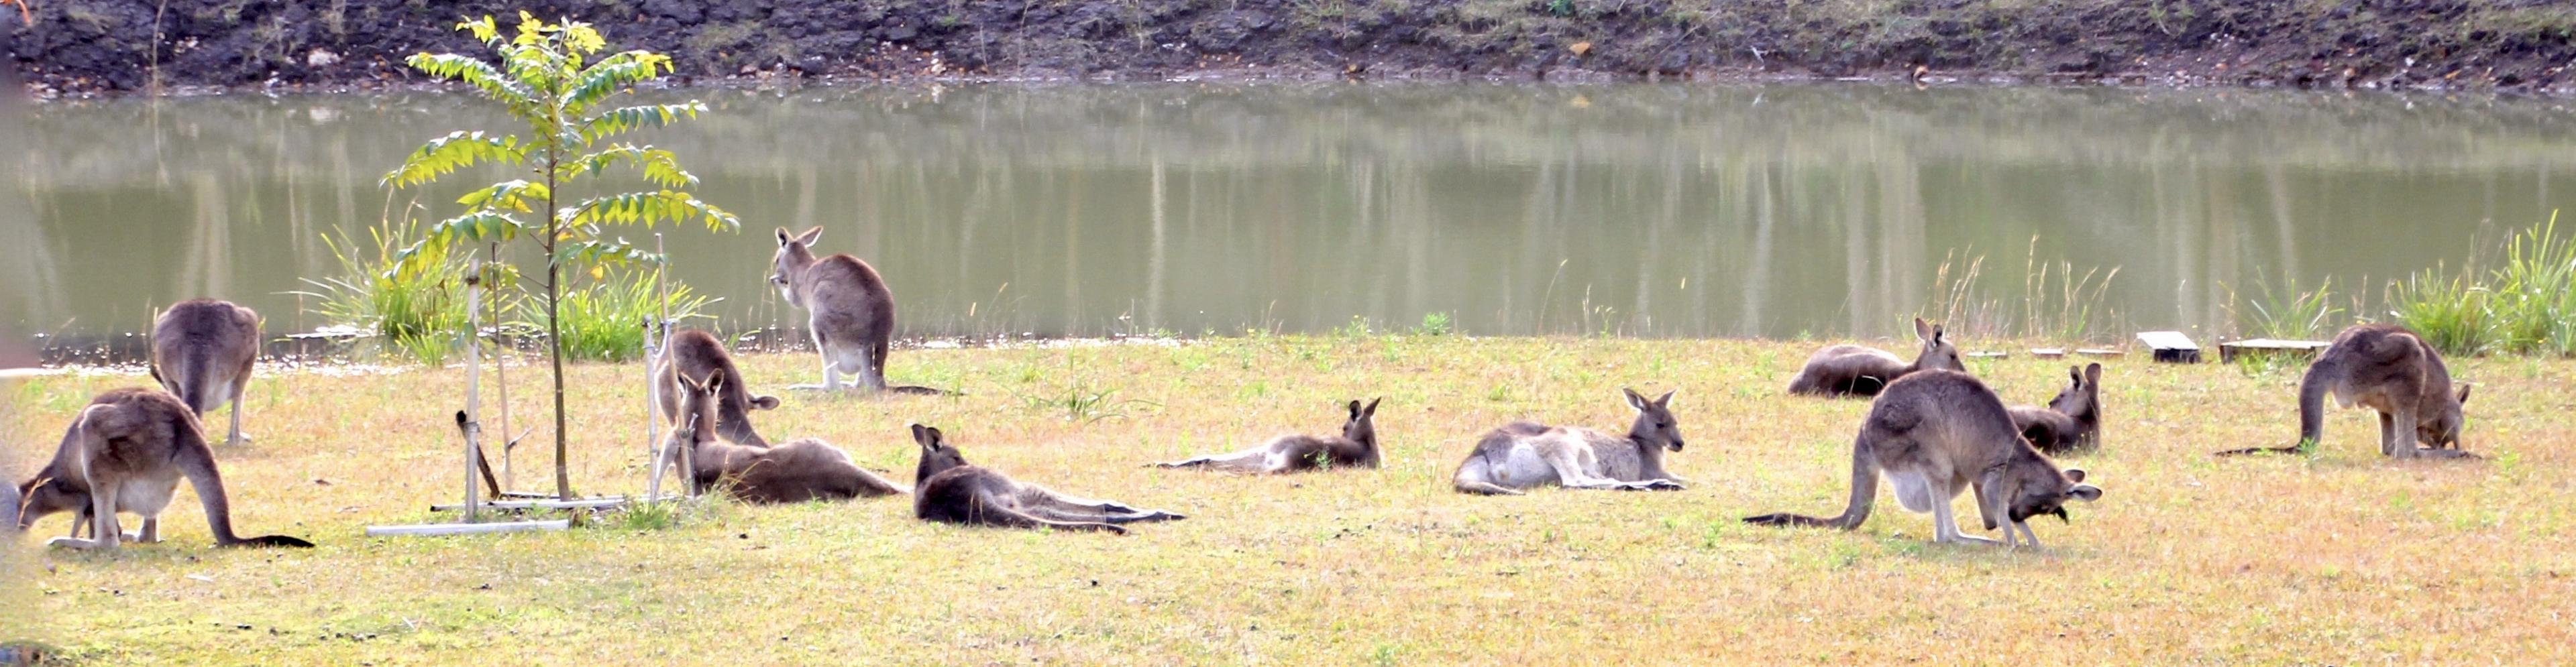 Eine Gruppe von grauen Riesenkängurus und Wallabies liegt auf dem Rasen vor einem Damm, manche grasen, die meisten ruhen sich nur aus.